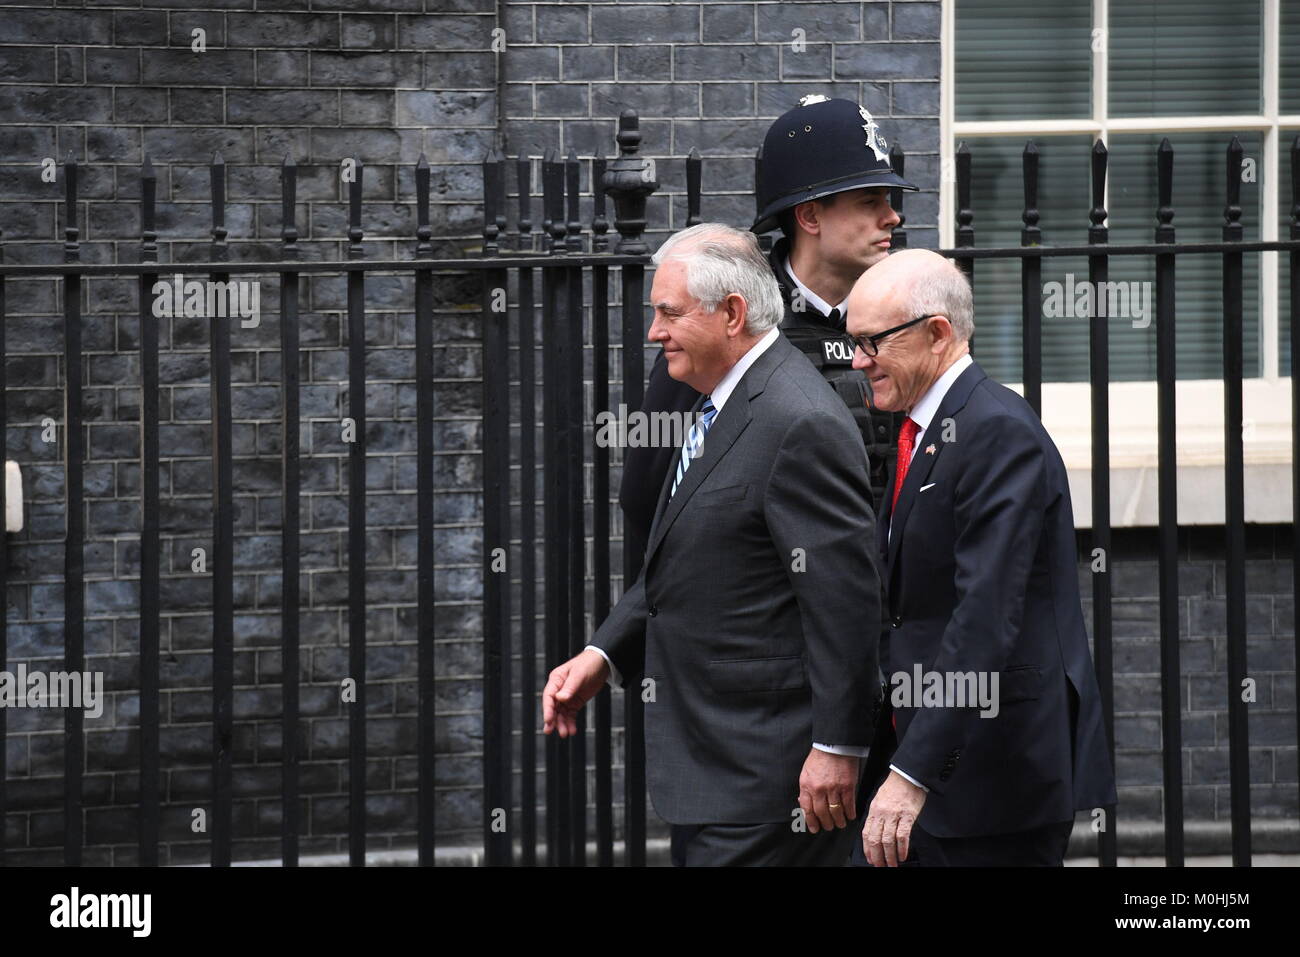 Le secrétaire d'Etat américain Rex Tillerson (à gauche) et l'ambassadeur des Etats-Unis Woody Johnson arrivent au 10 Downing Street, Londres, pour des entretiens avec le premier ministre Theresa May. Banque D'Images